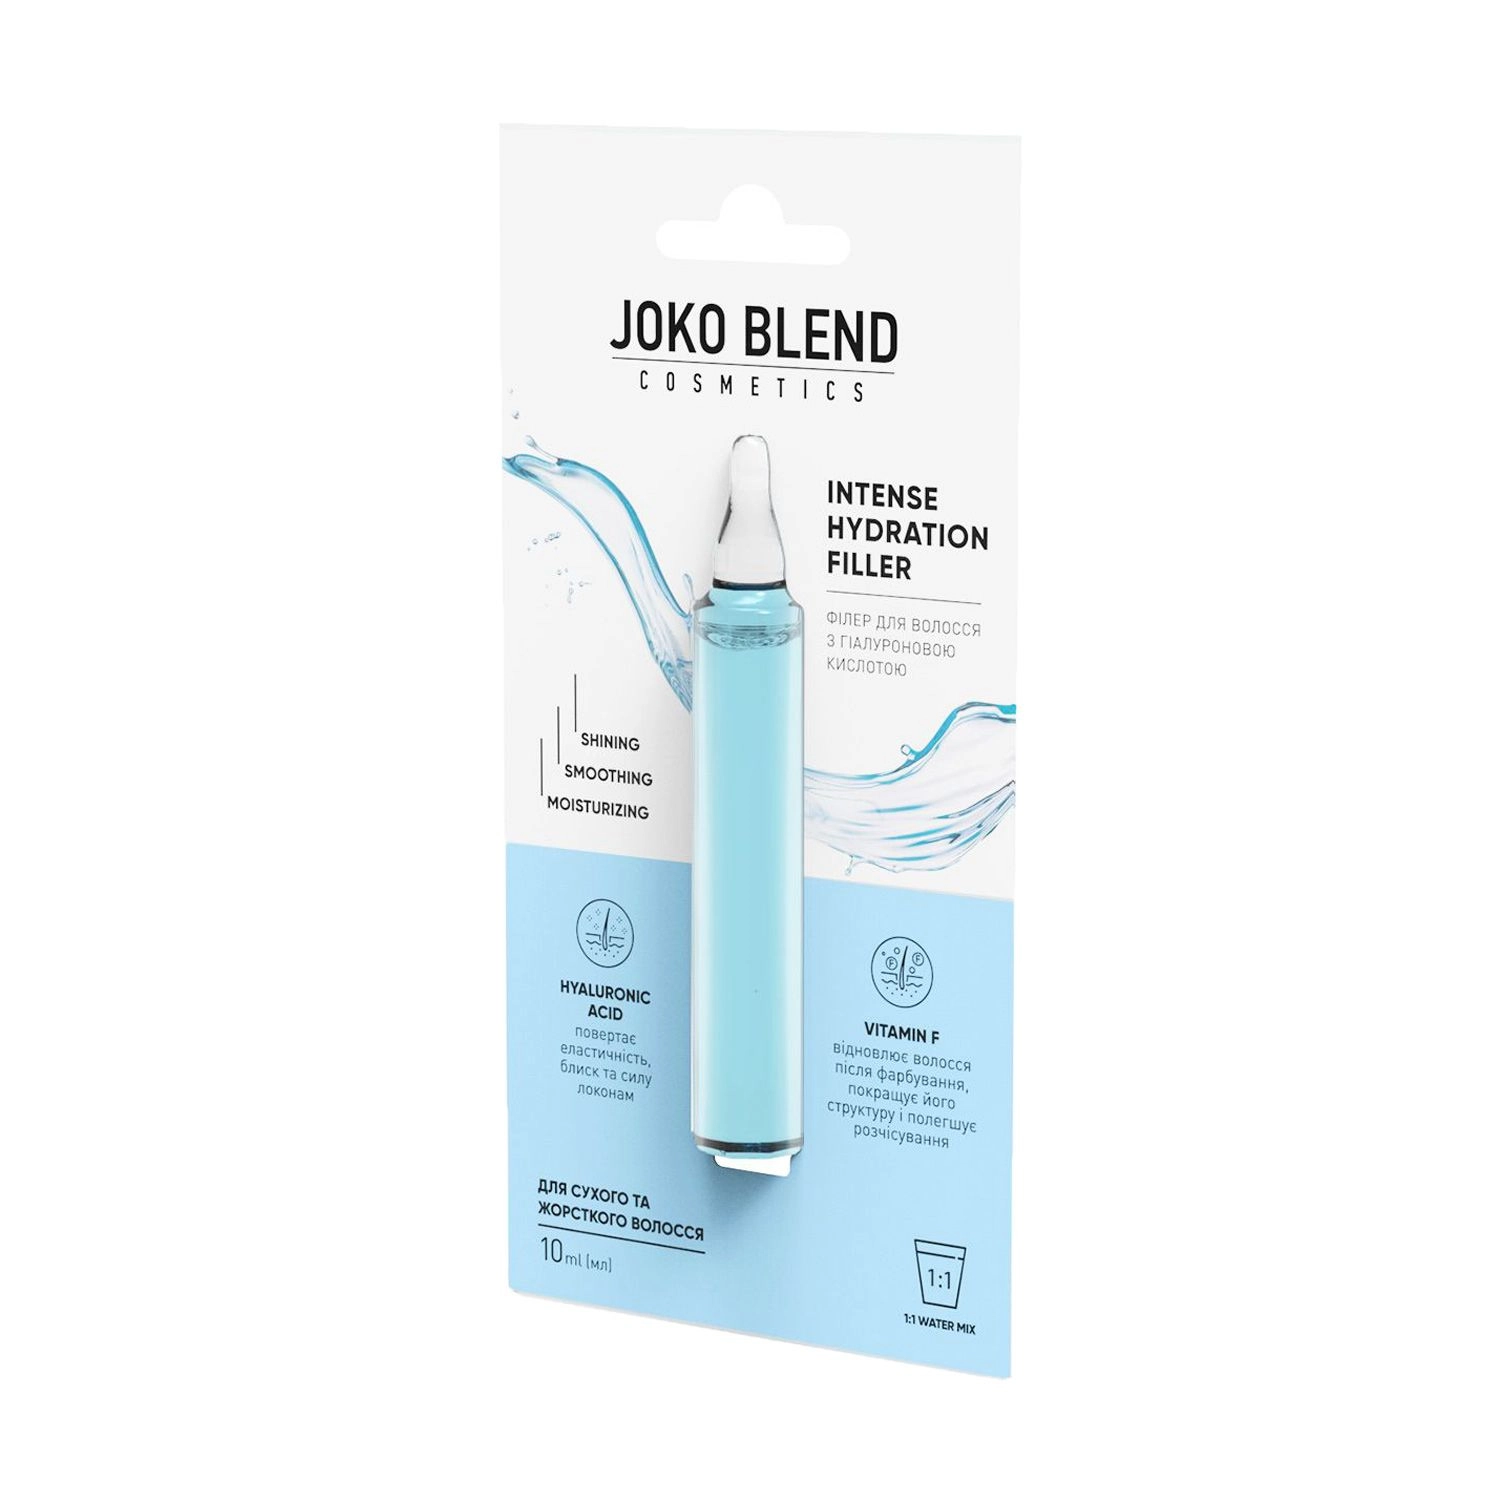 Joko Blend Филлер Intense Hydration Filler для сухих и жестких волос, с гиалуроновой кислотой, 10 мл - фото N2